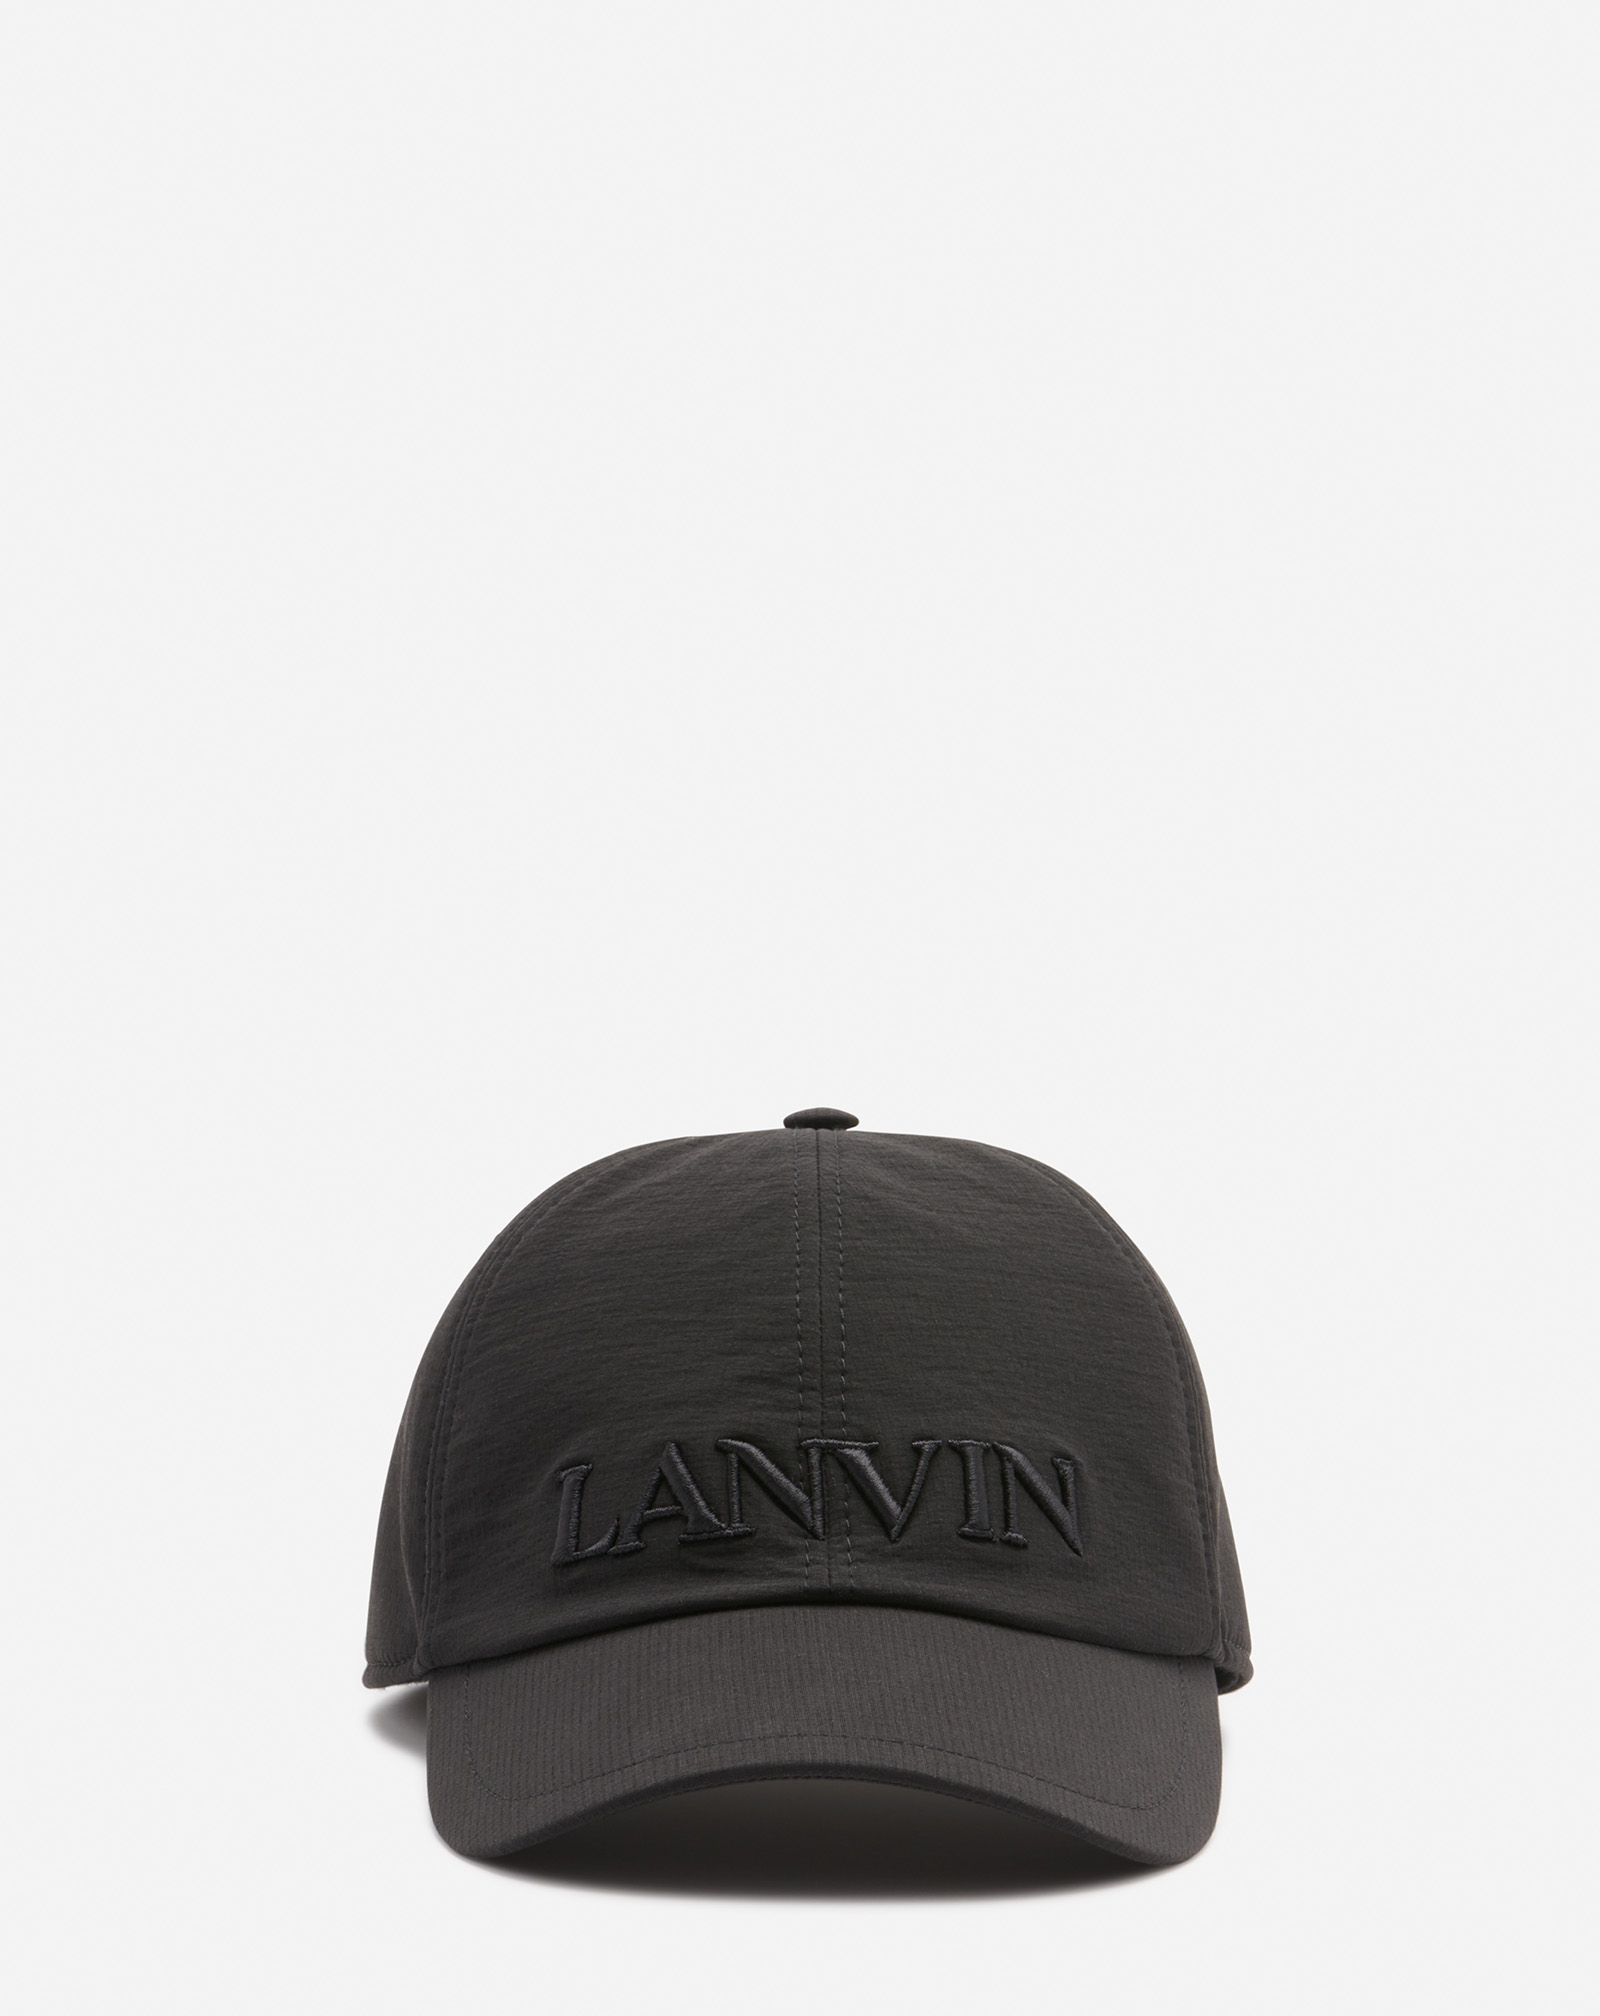 Lanvin In Black